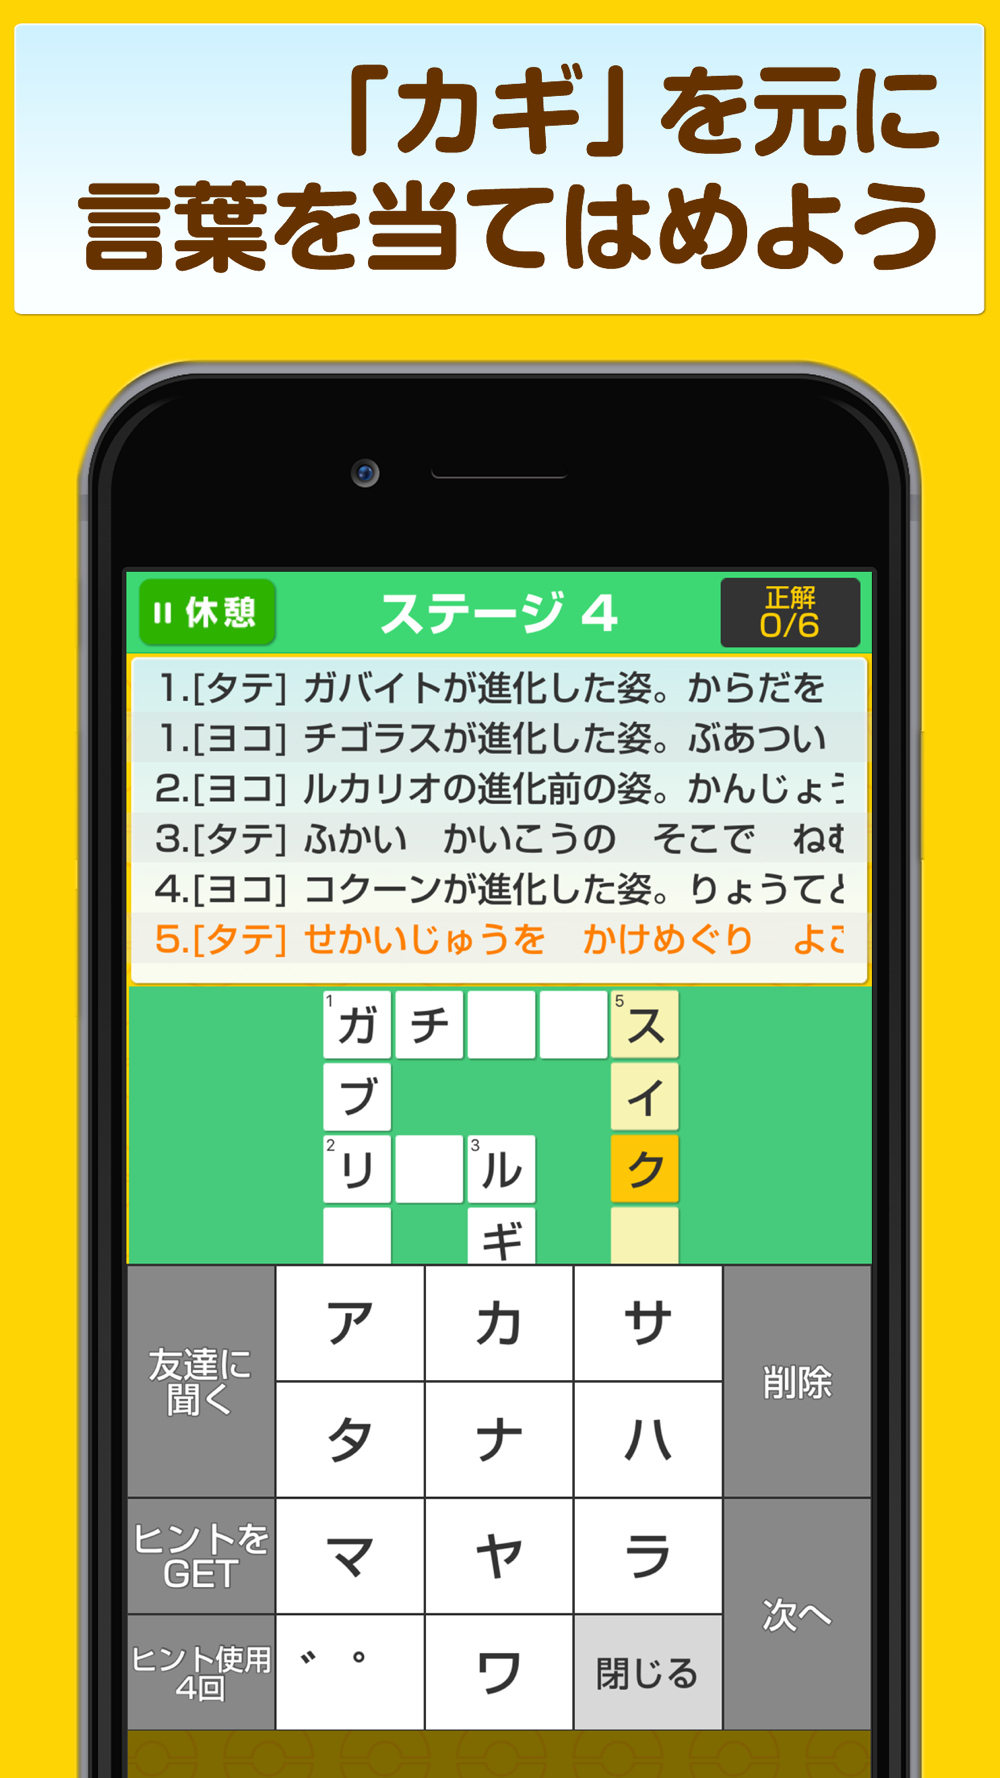 クロスワードforポケモン Free Download App For Iphone Steprimo Com